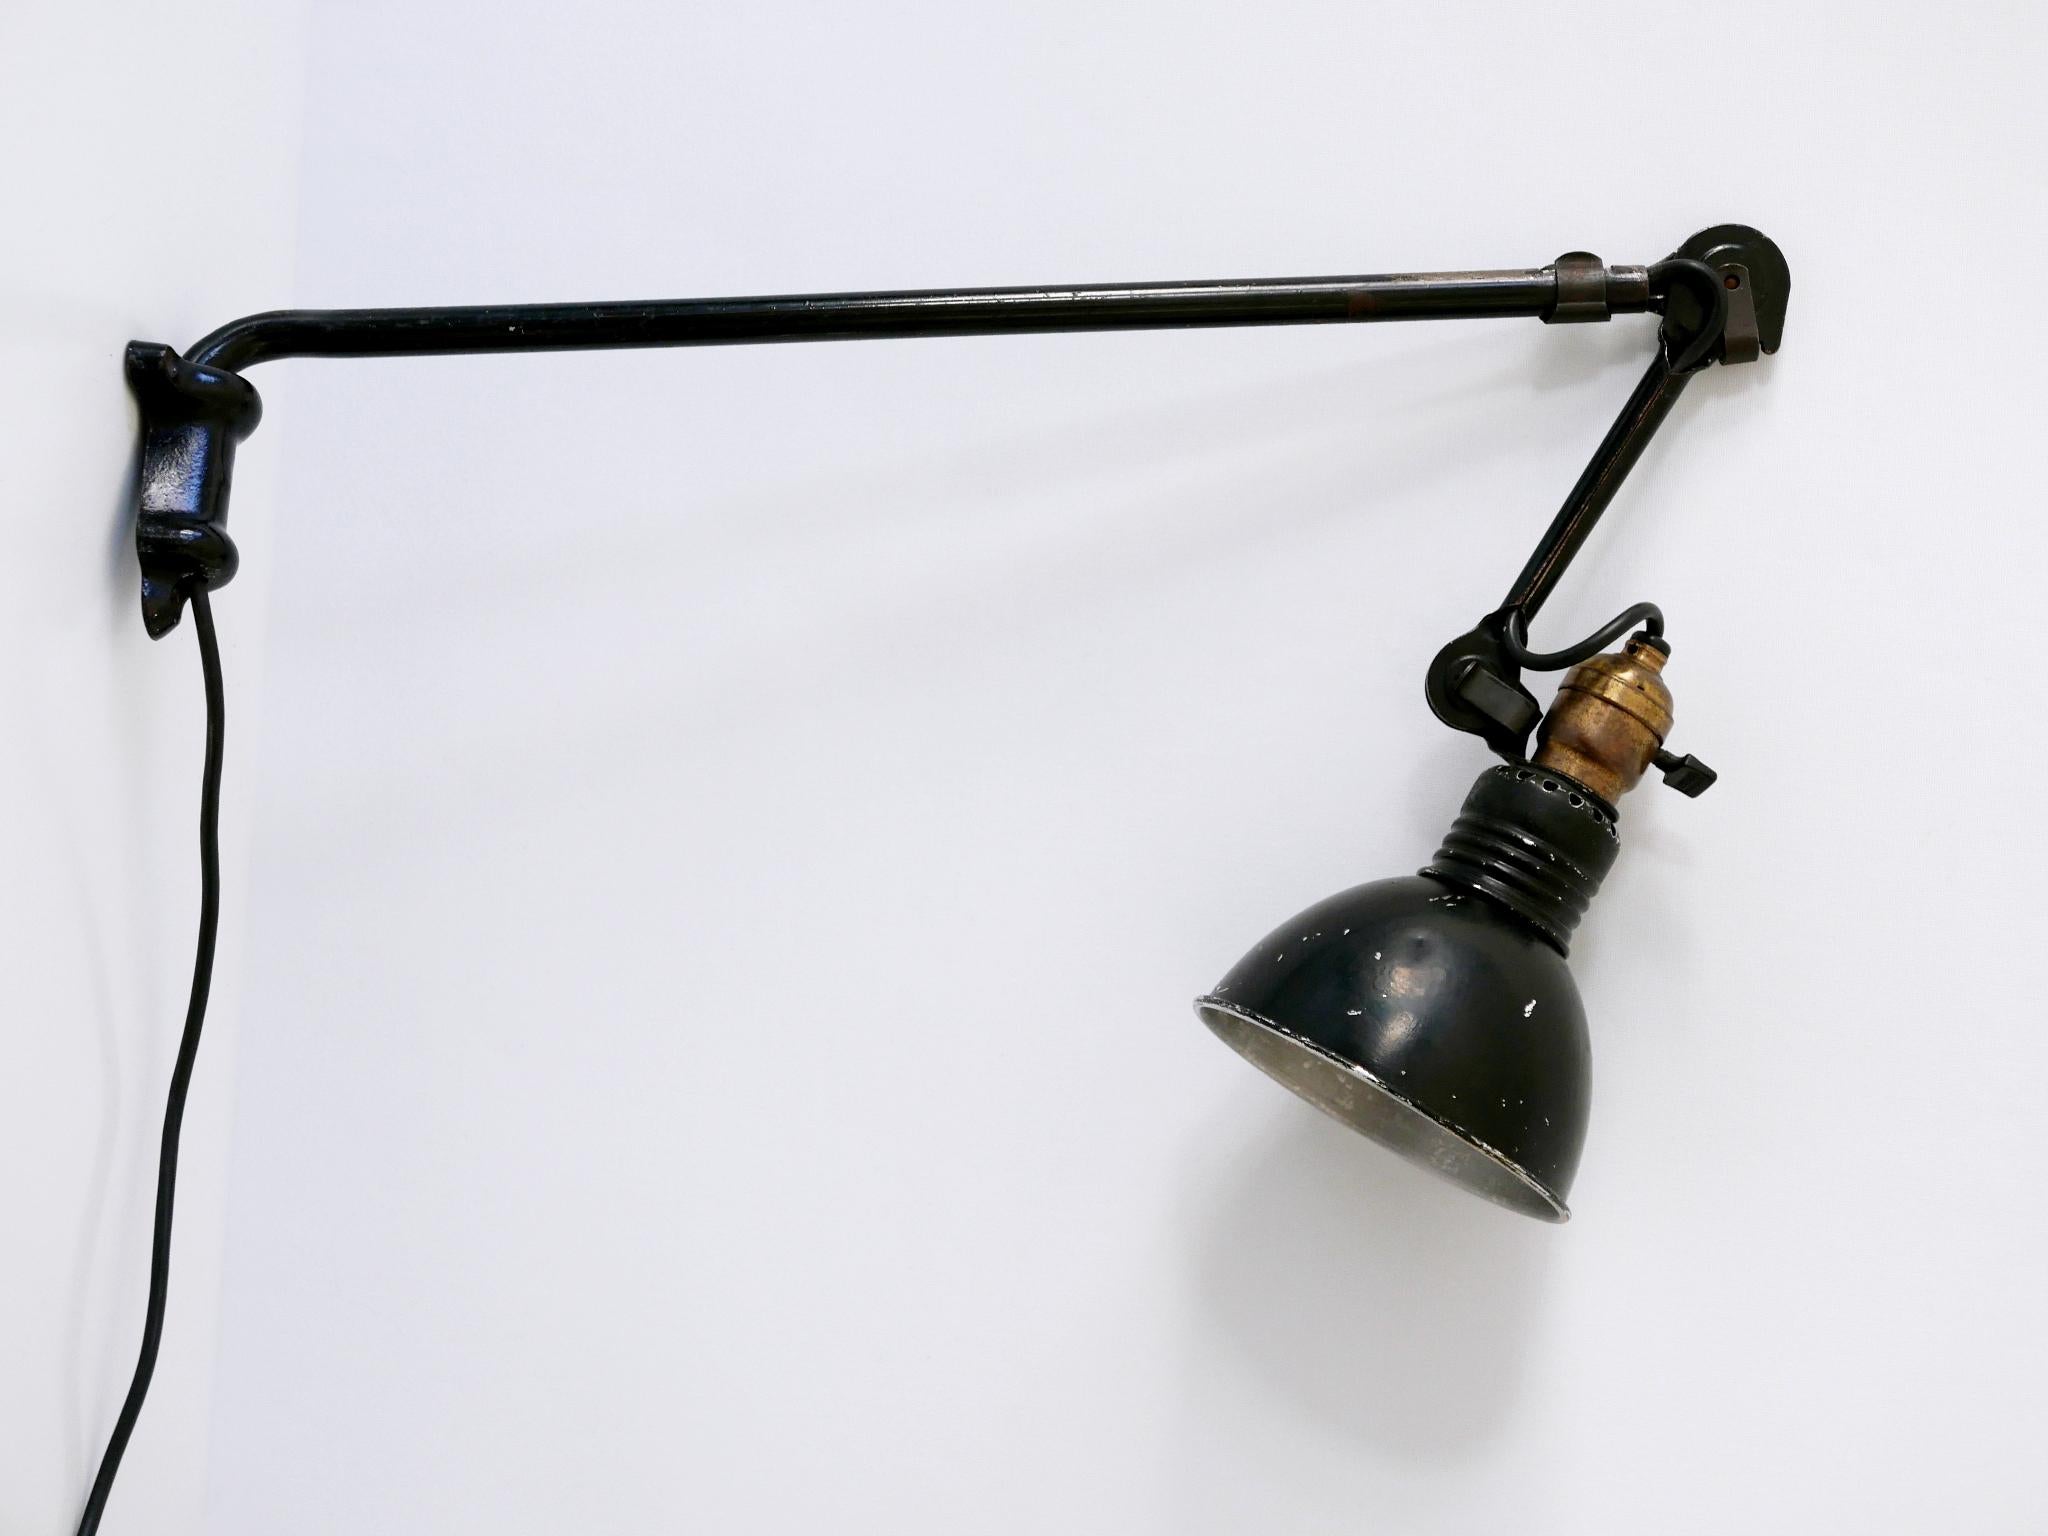 French Modernist Wall Lamp Model 203 by Bernard-Albin Gras for Gras Lamp, France, 1920s